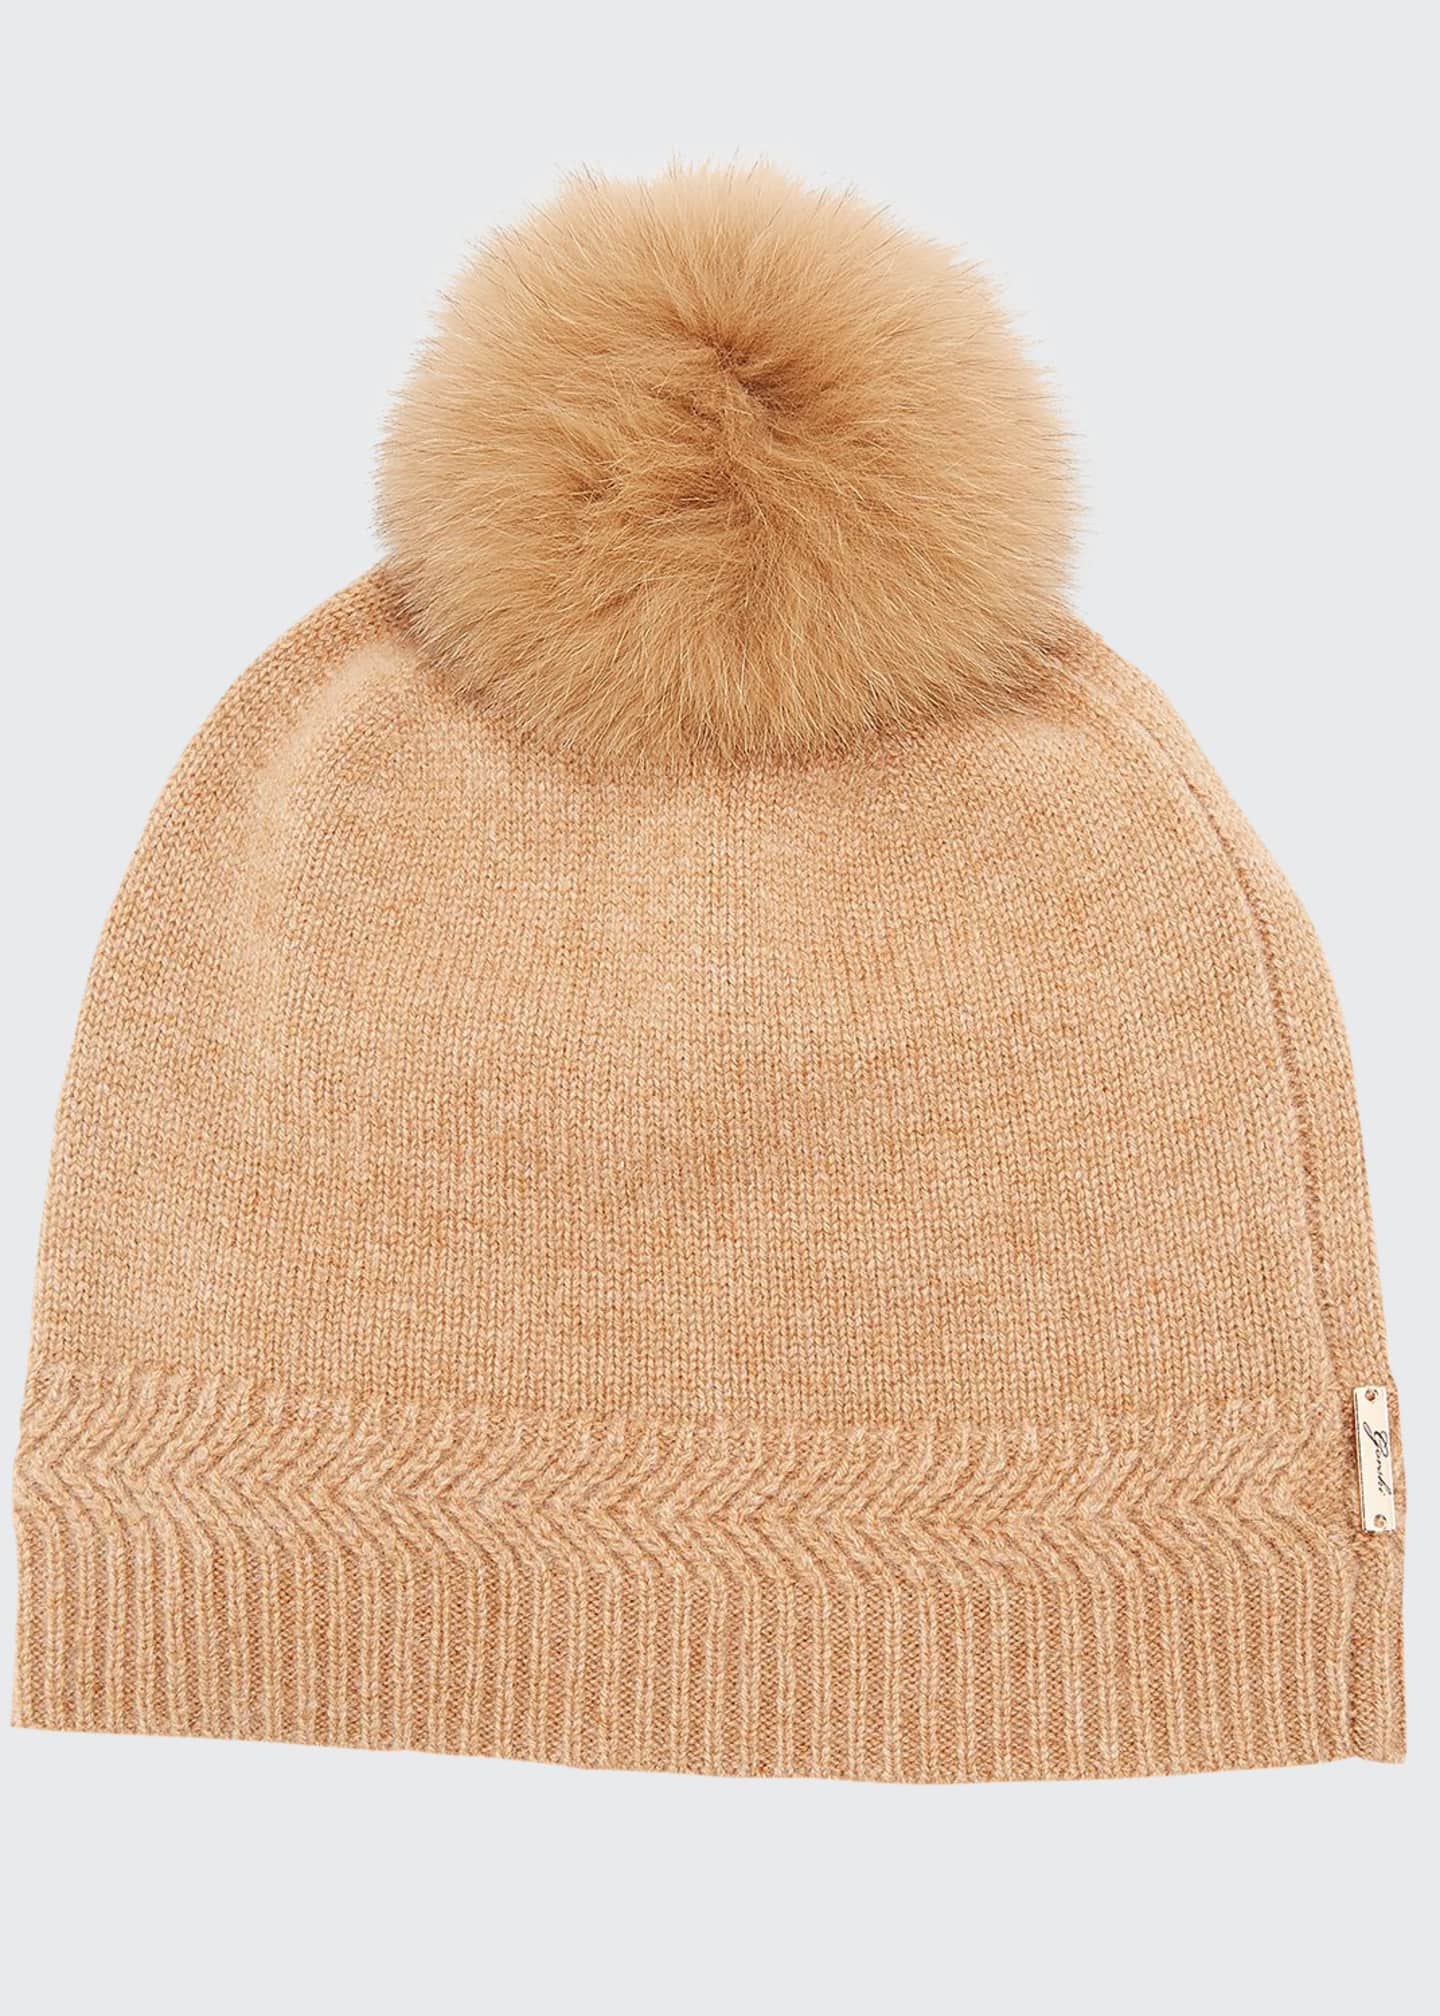 Gorski Knit Cashmere Beanie Hat w/ Fur Pompom - Bergdorf Goodman